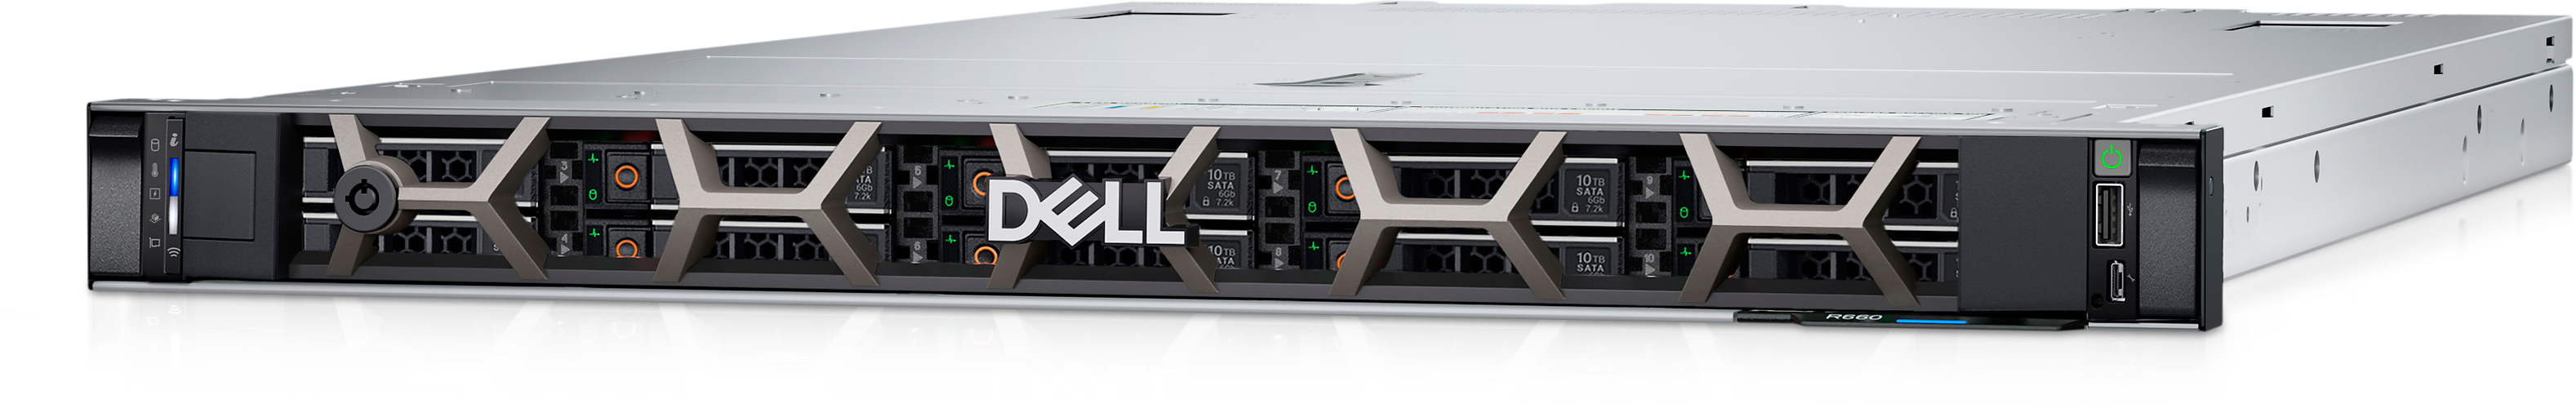 Dell PowerEdge R660 랙 서버